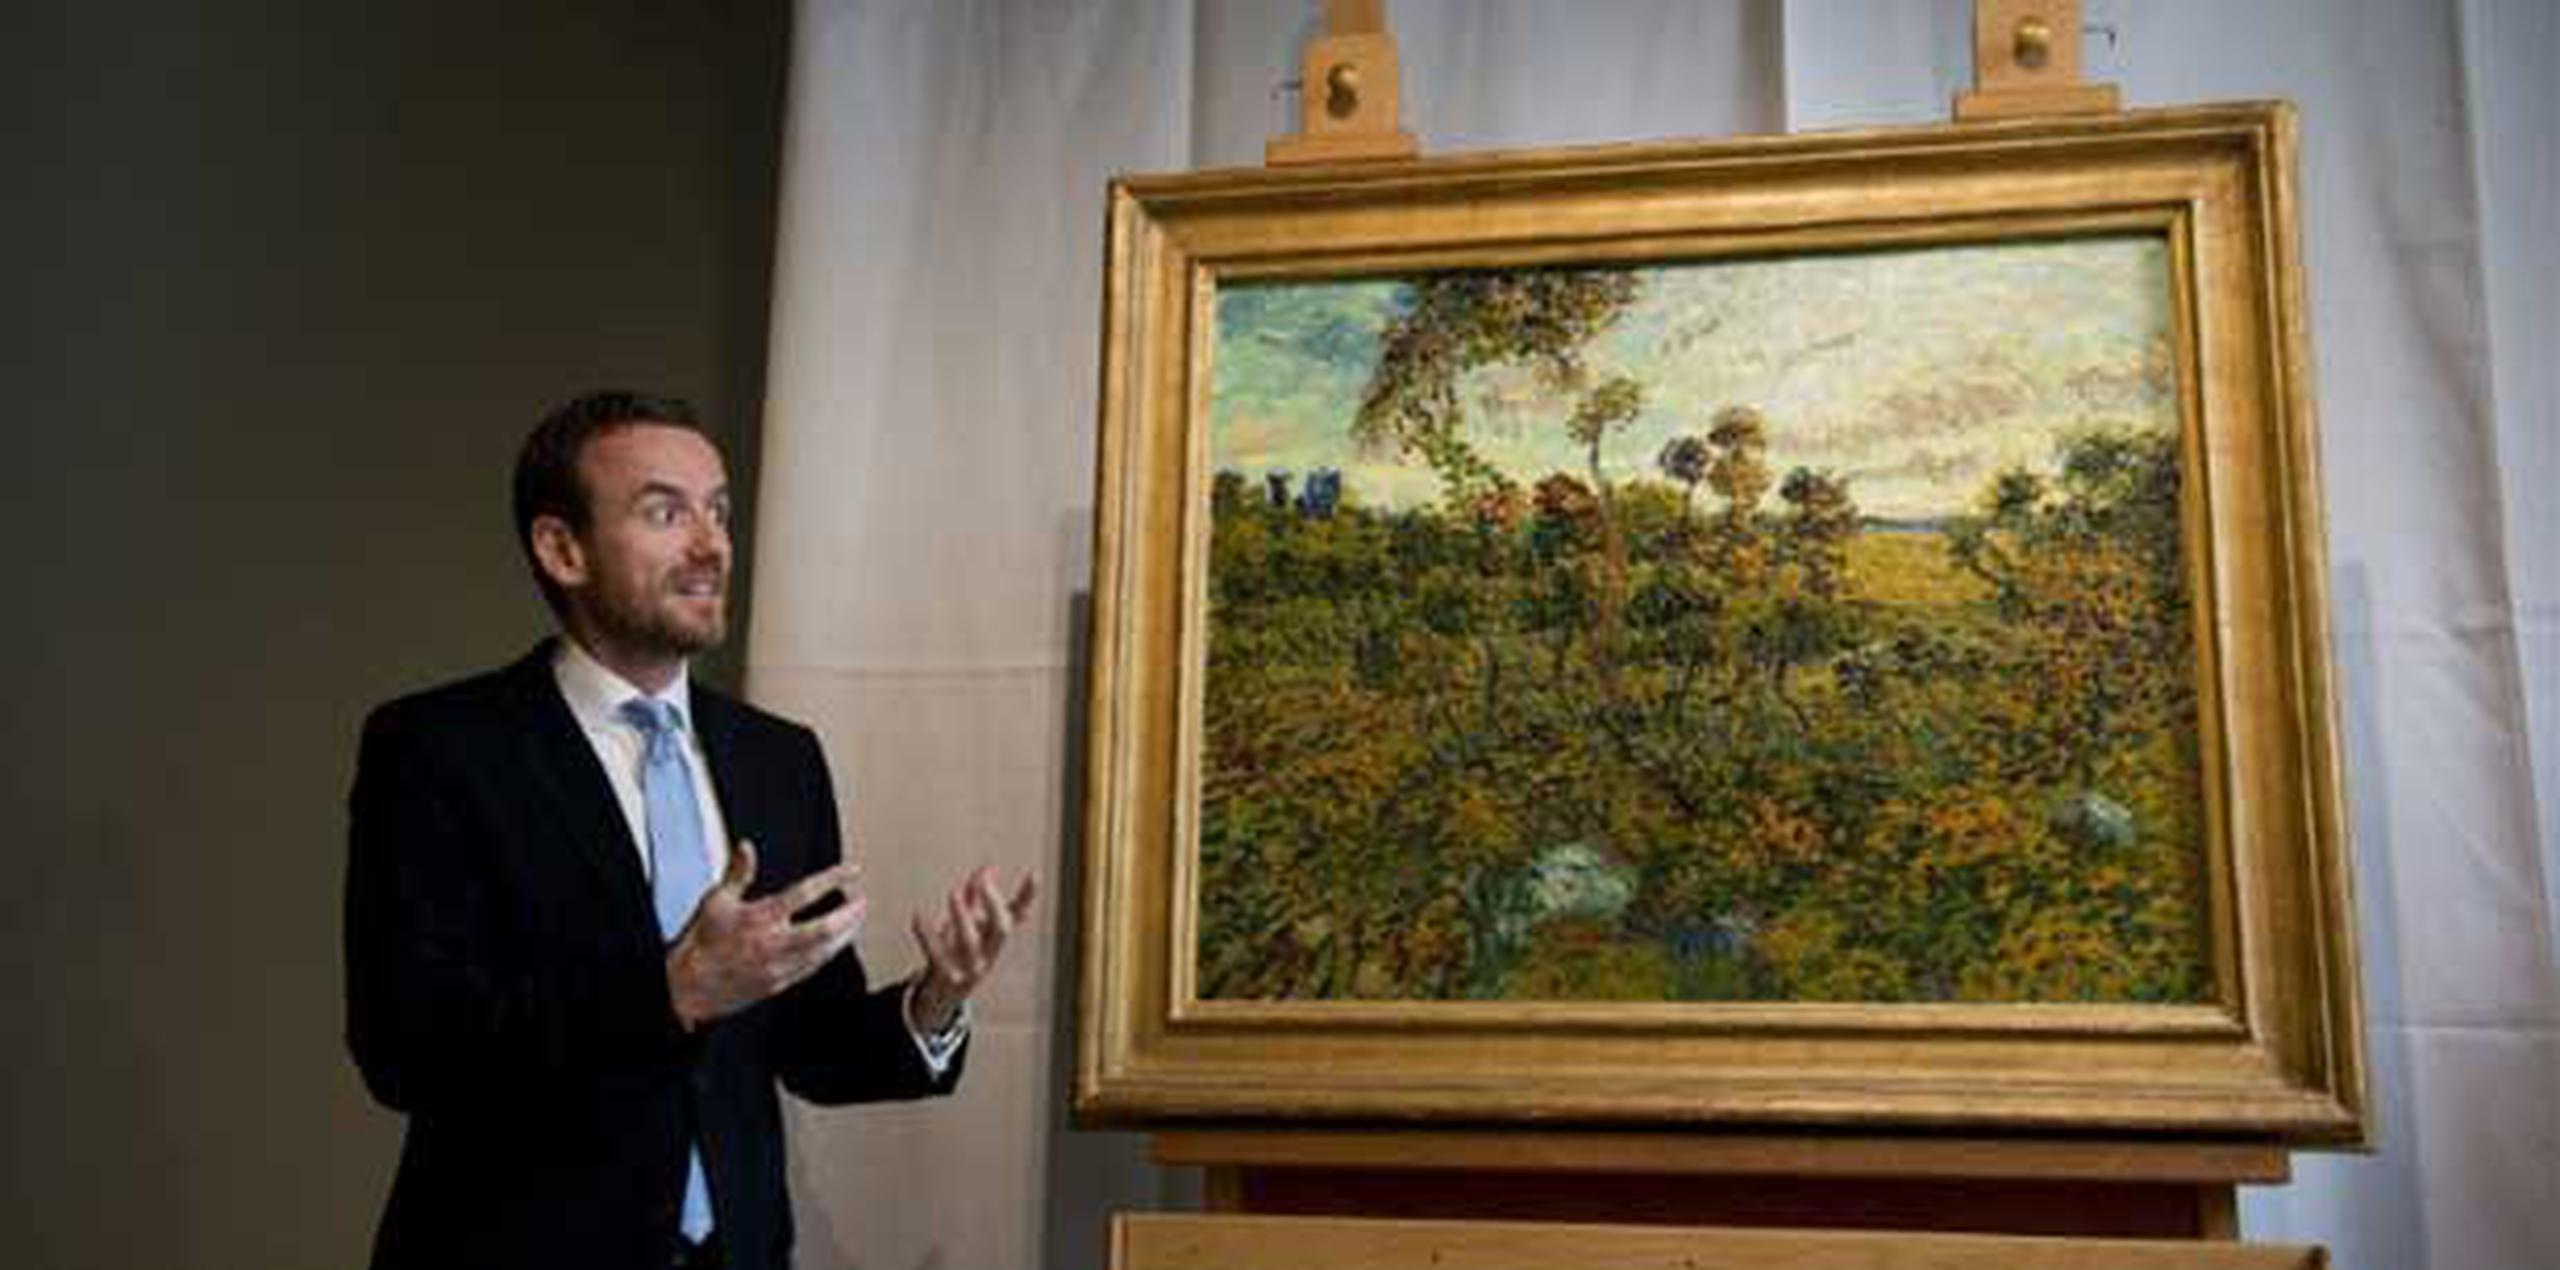 El director del museo Axel Rueger describió el hallazgo como "una experiencia única en la vida". El museo no ha dicho a quién pertenece el cuadro. (AFP)